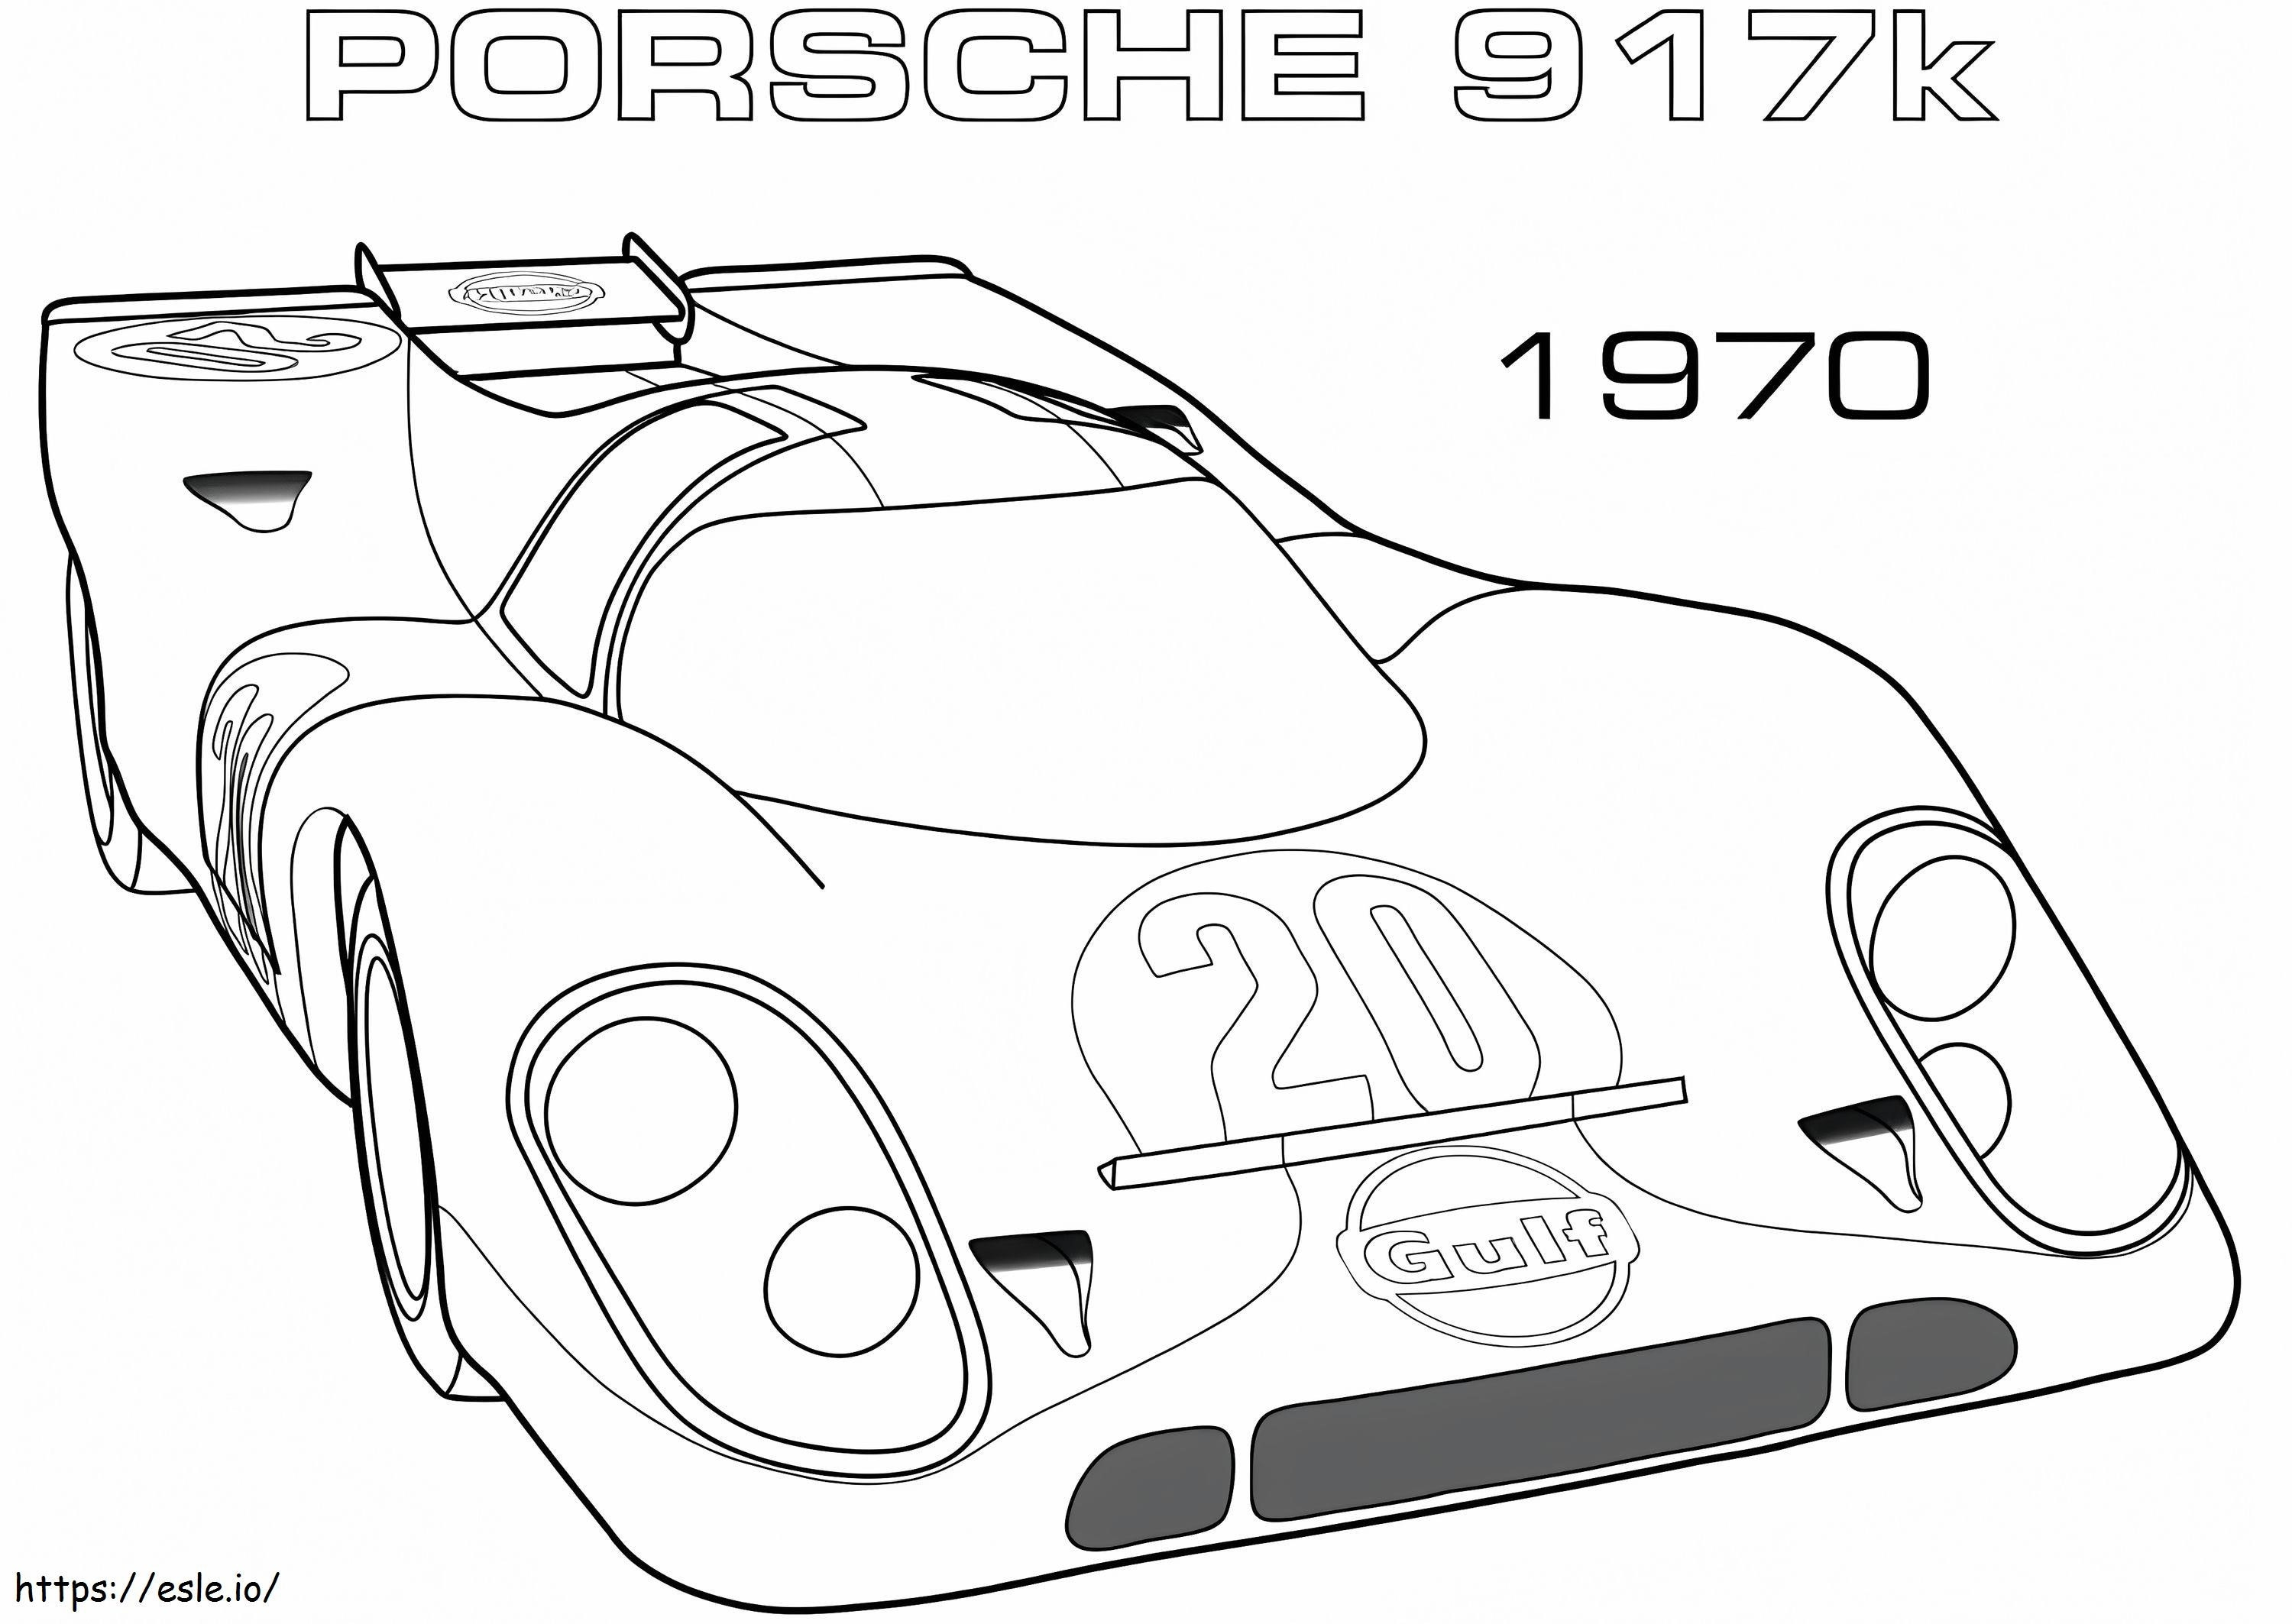 1970 Porsche 917K coloring page